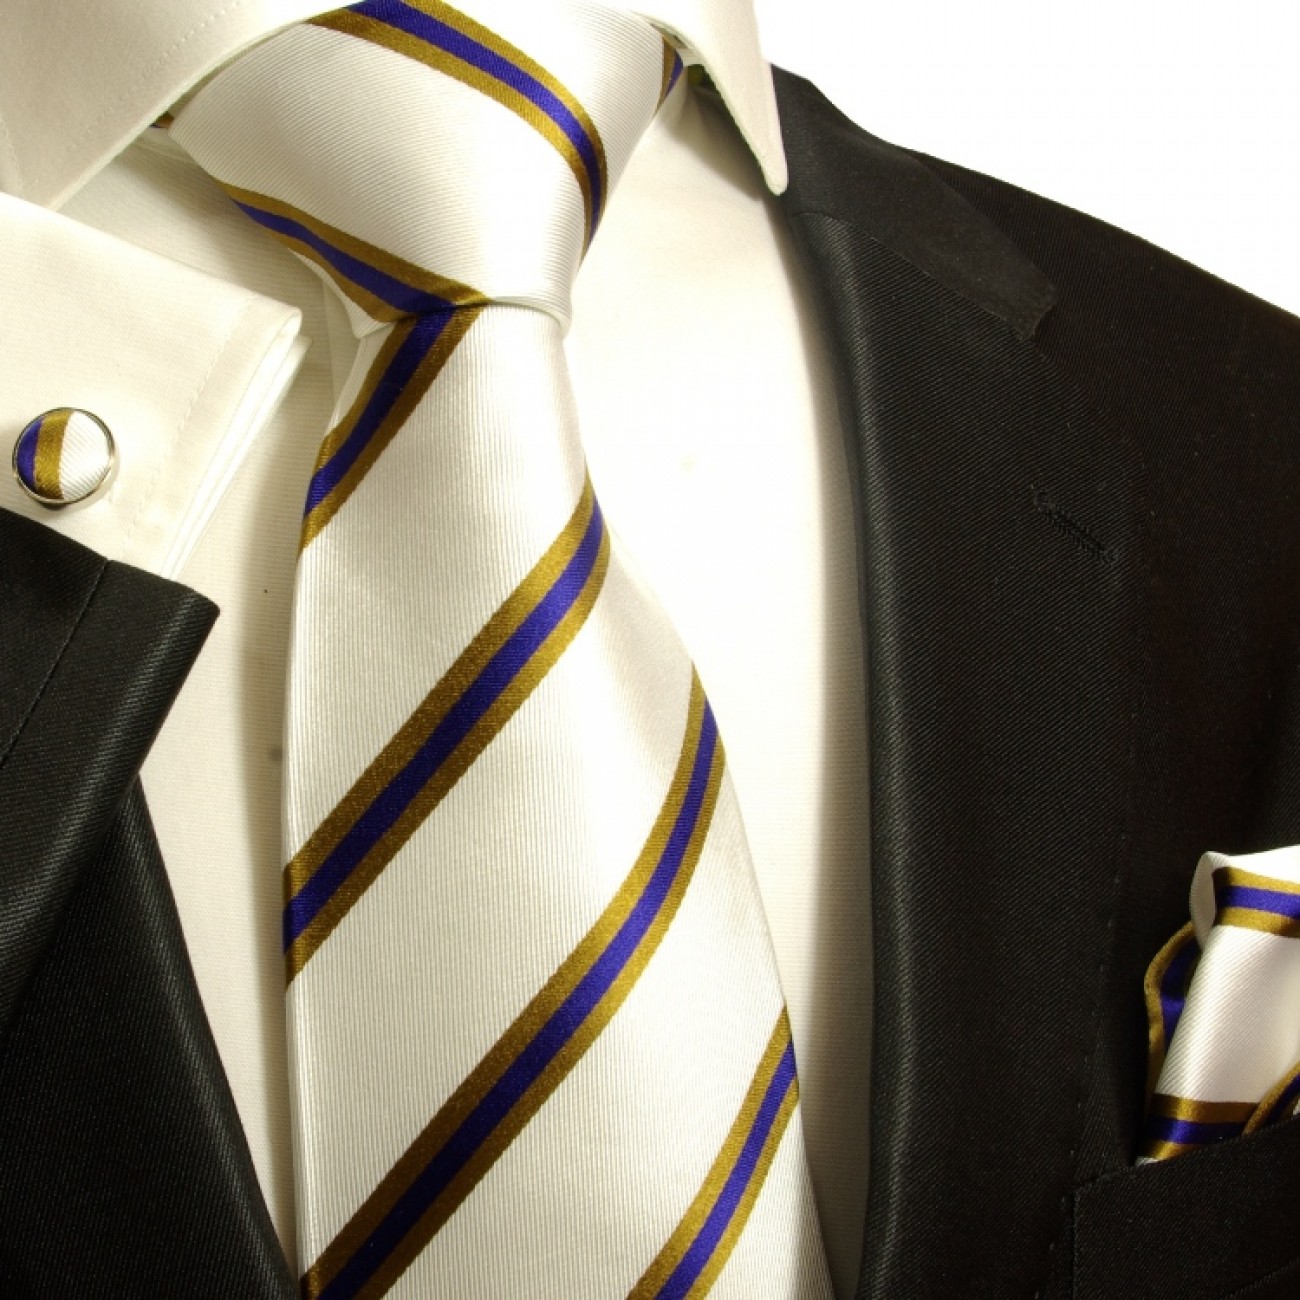 Krawatte blau gestreift Seidenkrawatte - Seide - Krawatte mit Einstecktuch und Manschettenknöpfe